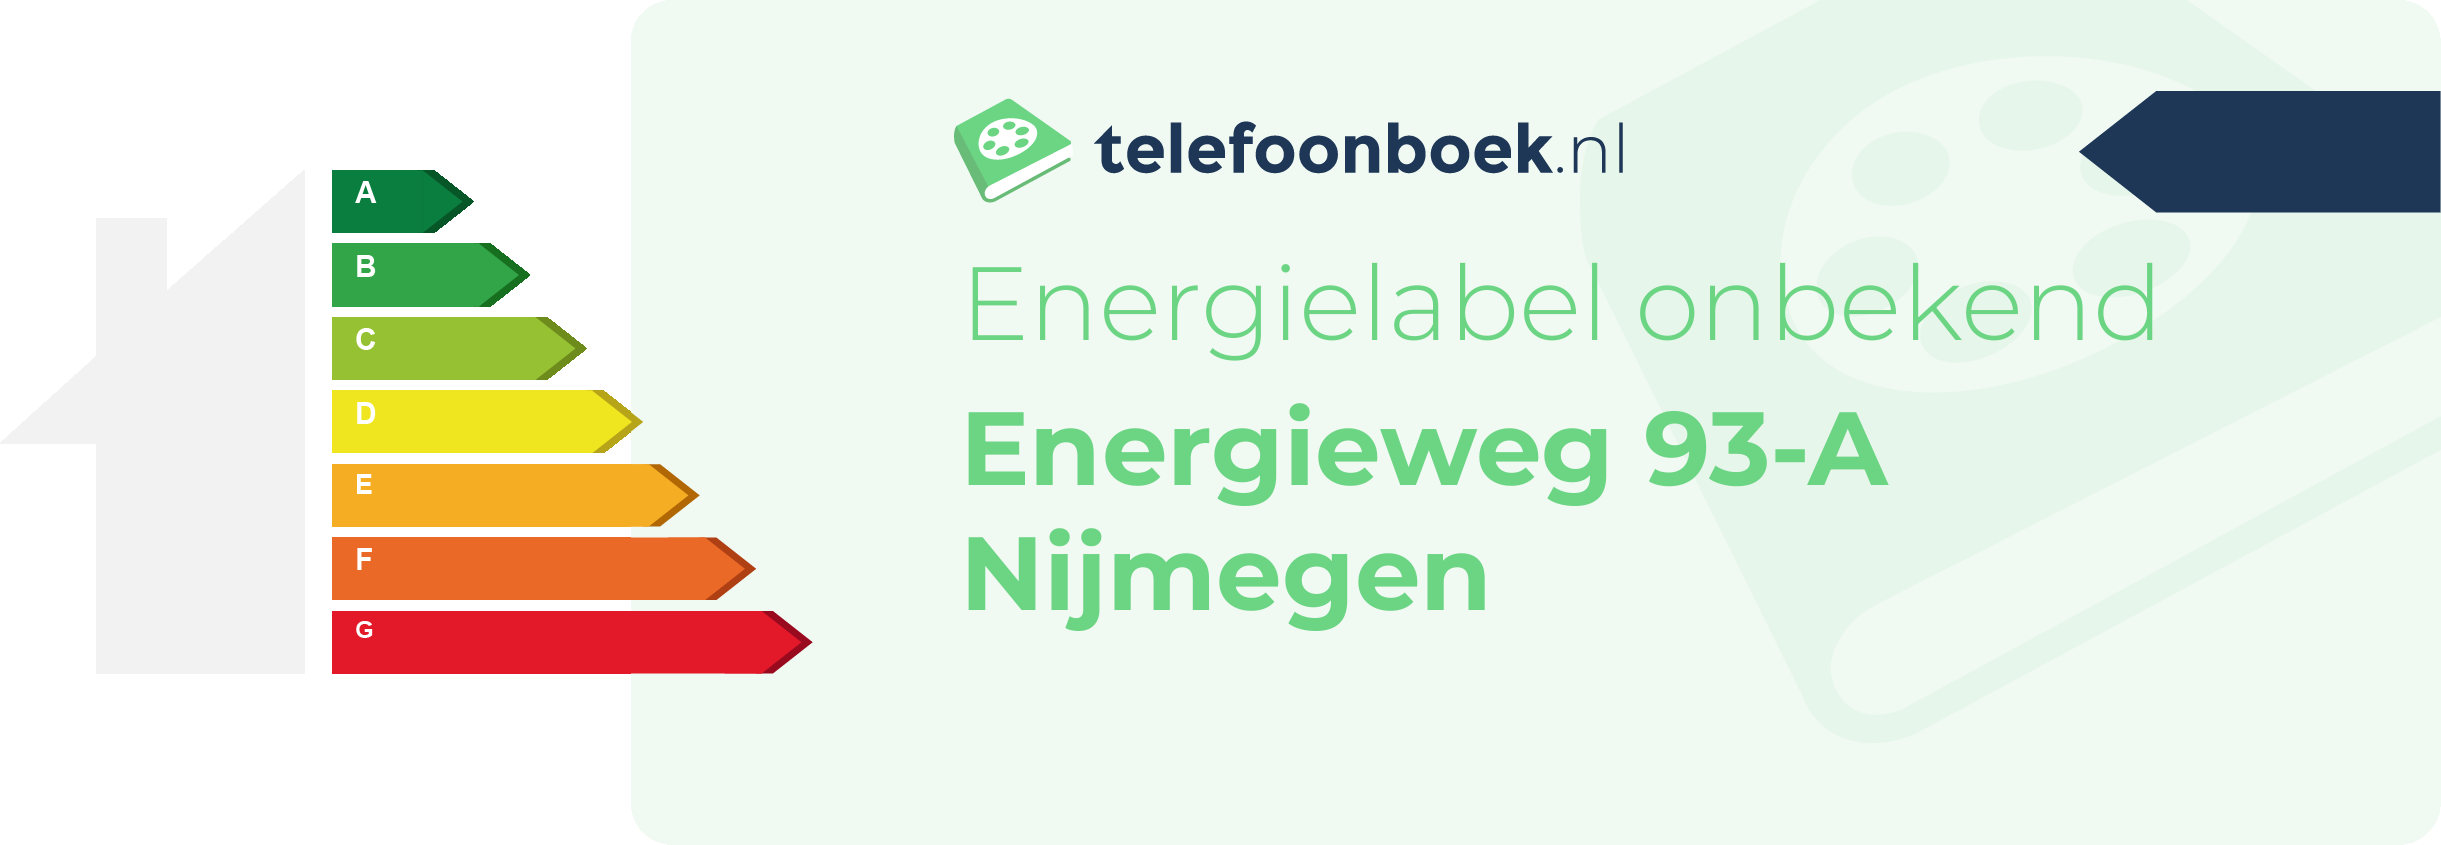 Energielabel Energieweg 93-A Nijmegen